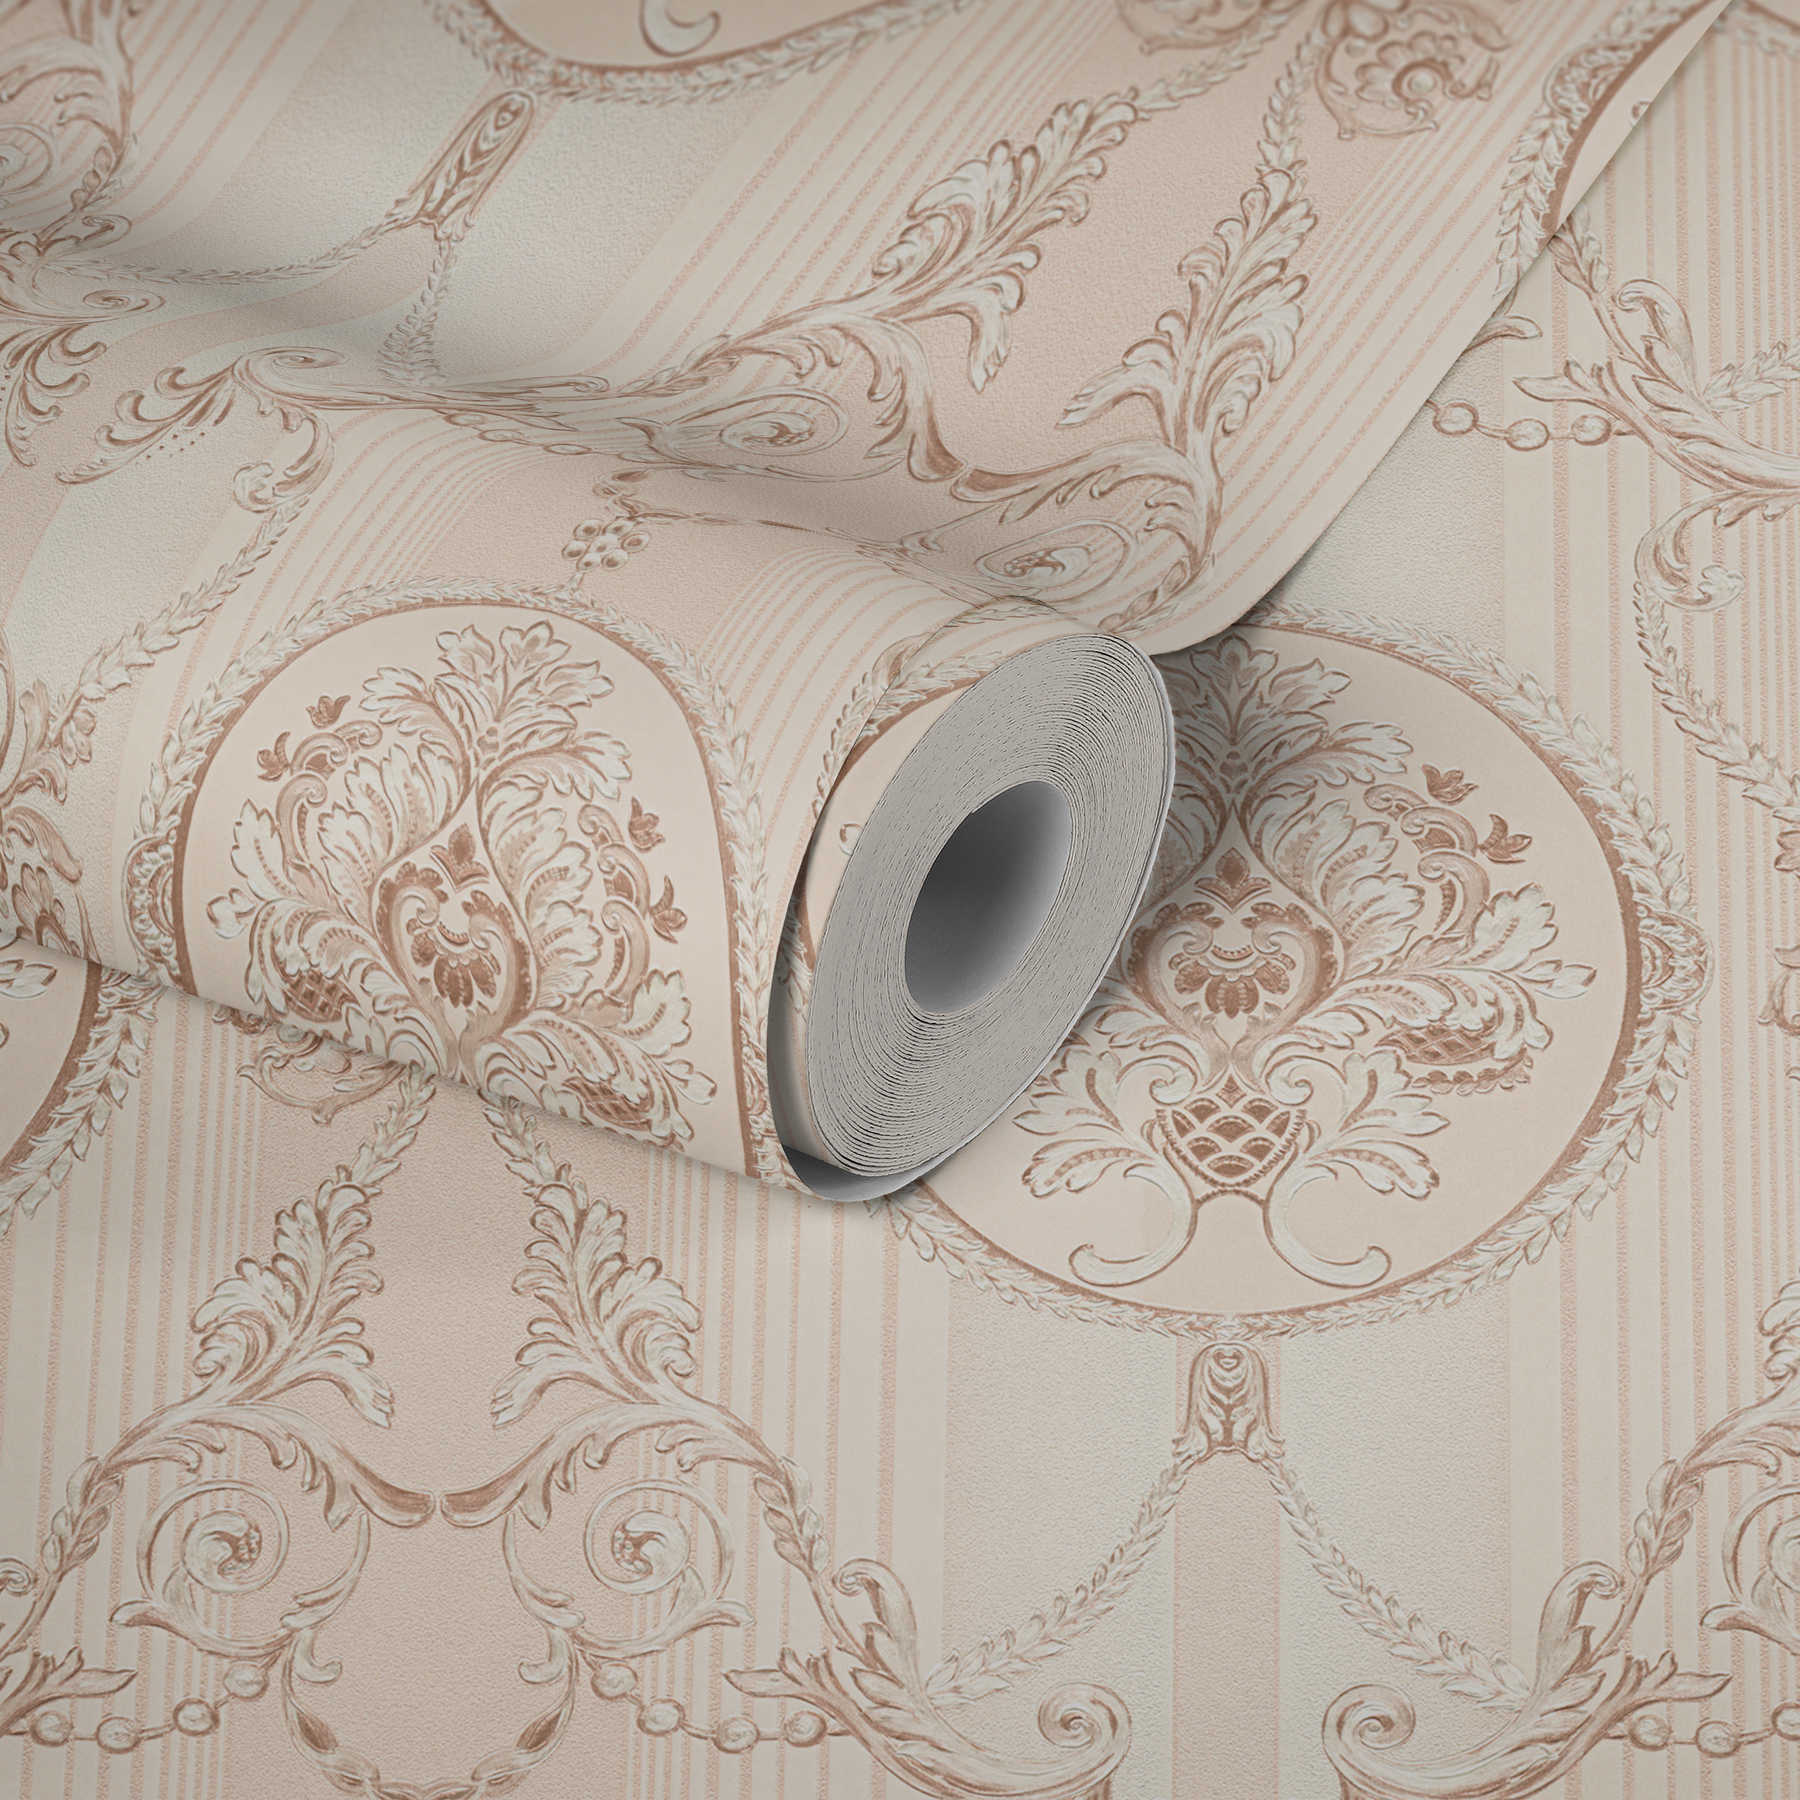             Neo-barok behang met ornamenteel patroon & strepen - crème, roze
        